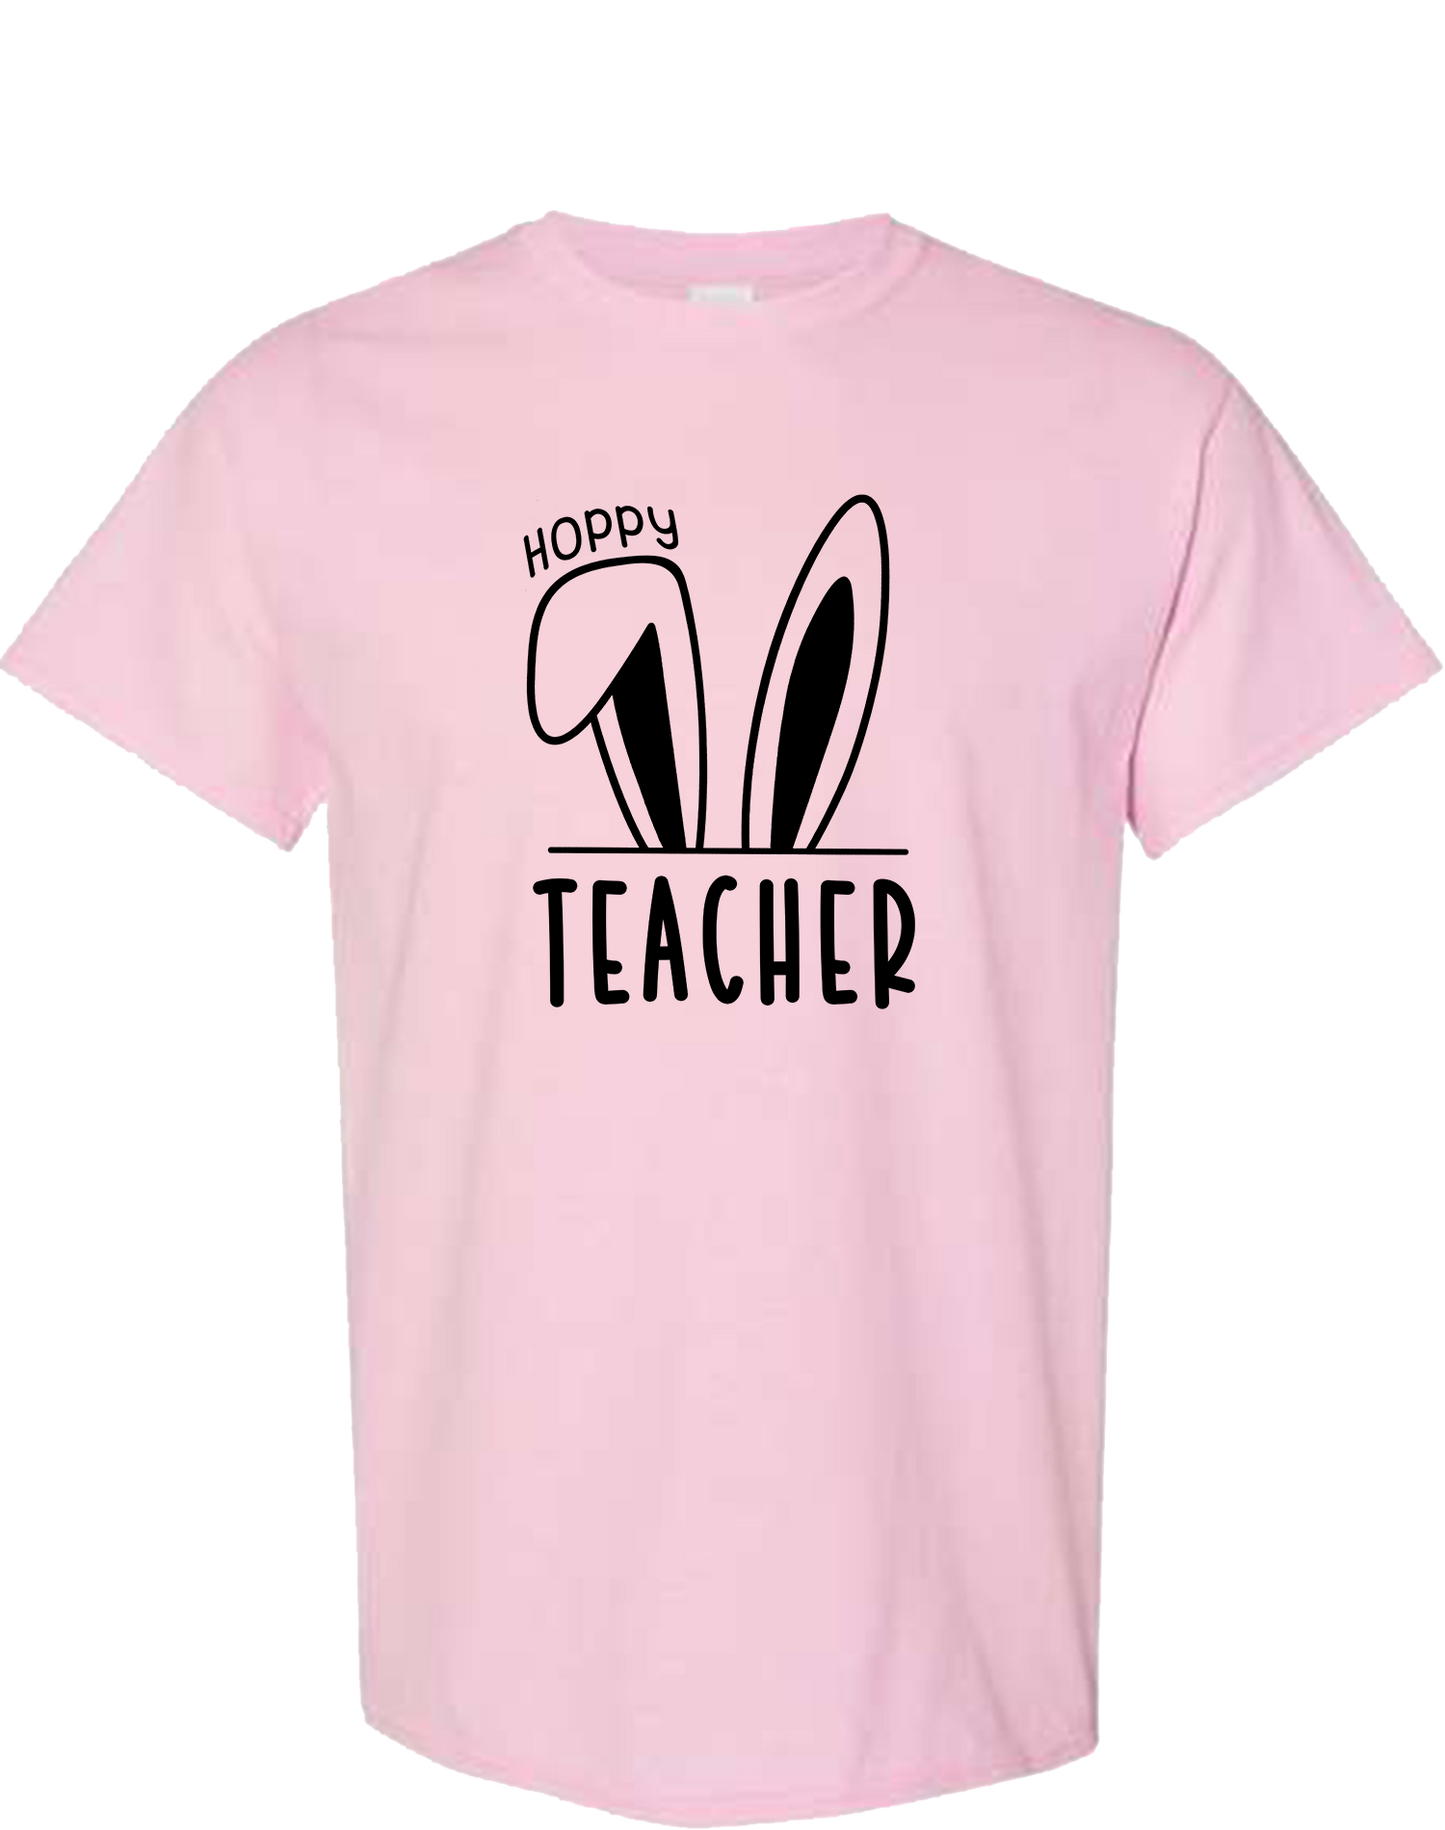 Hoppy Teacher